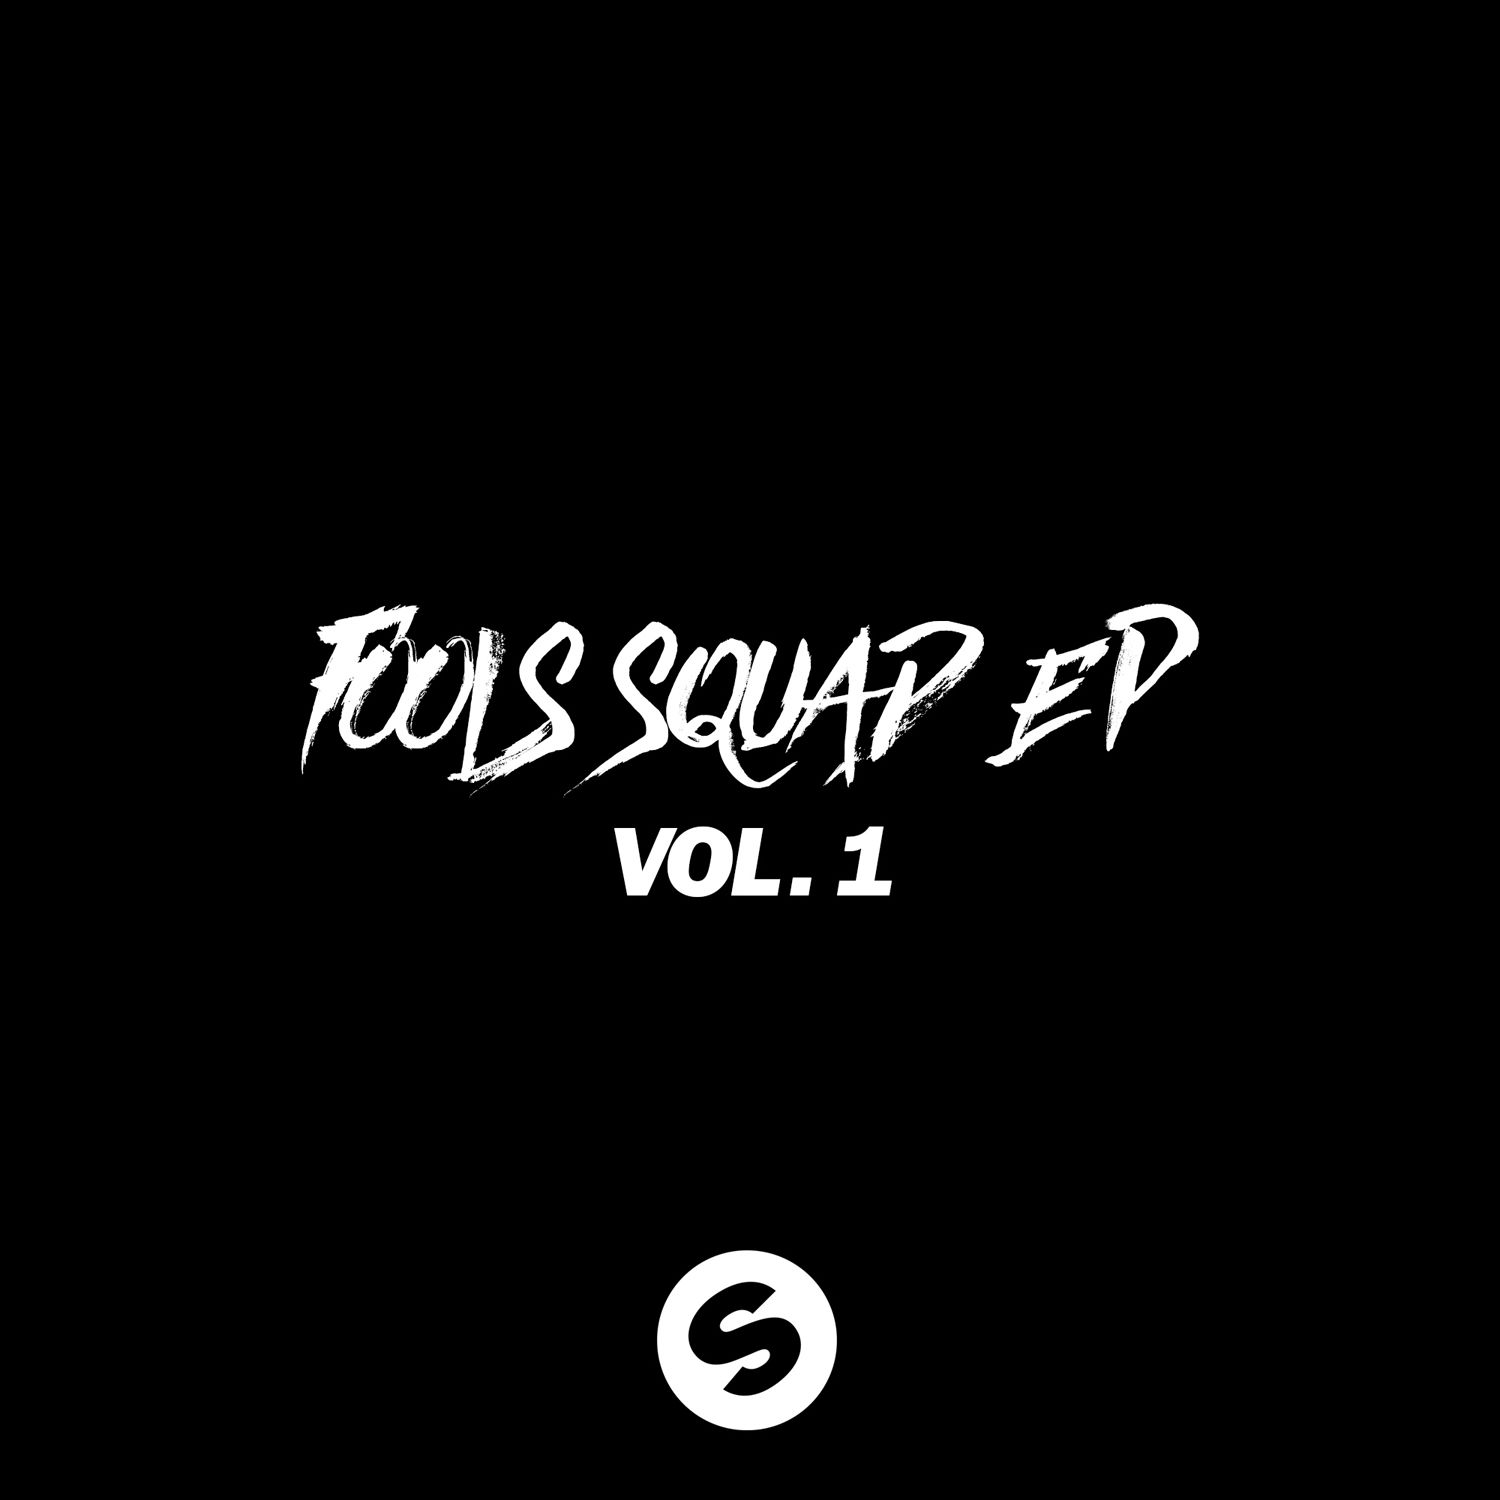 Fools Squad EP Vol. 1